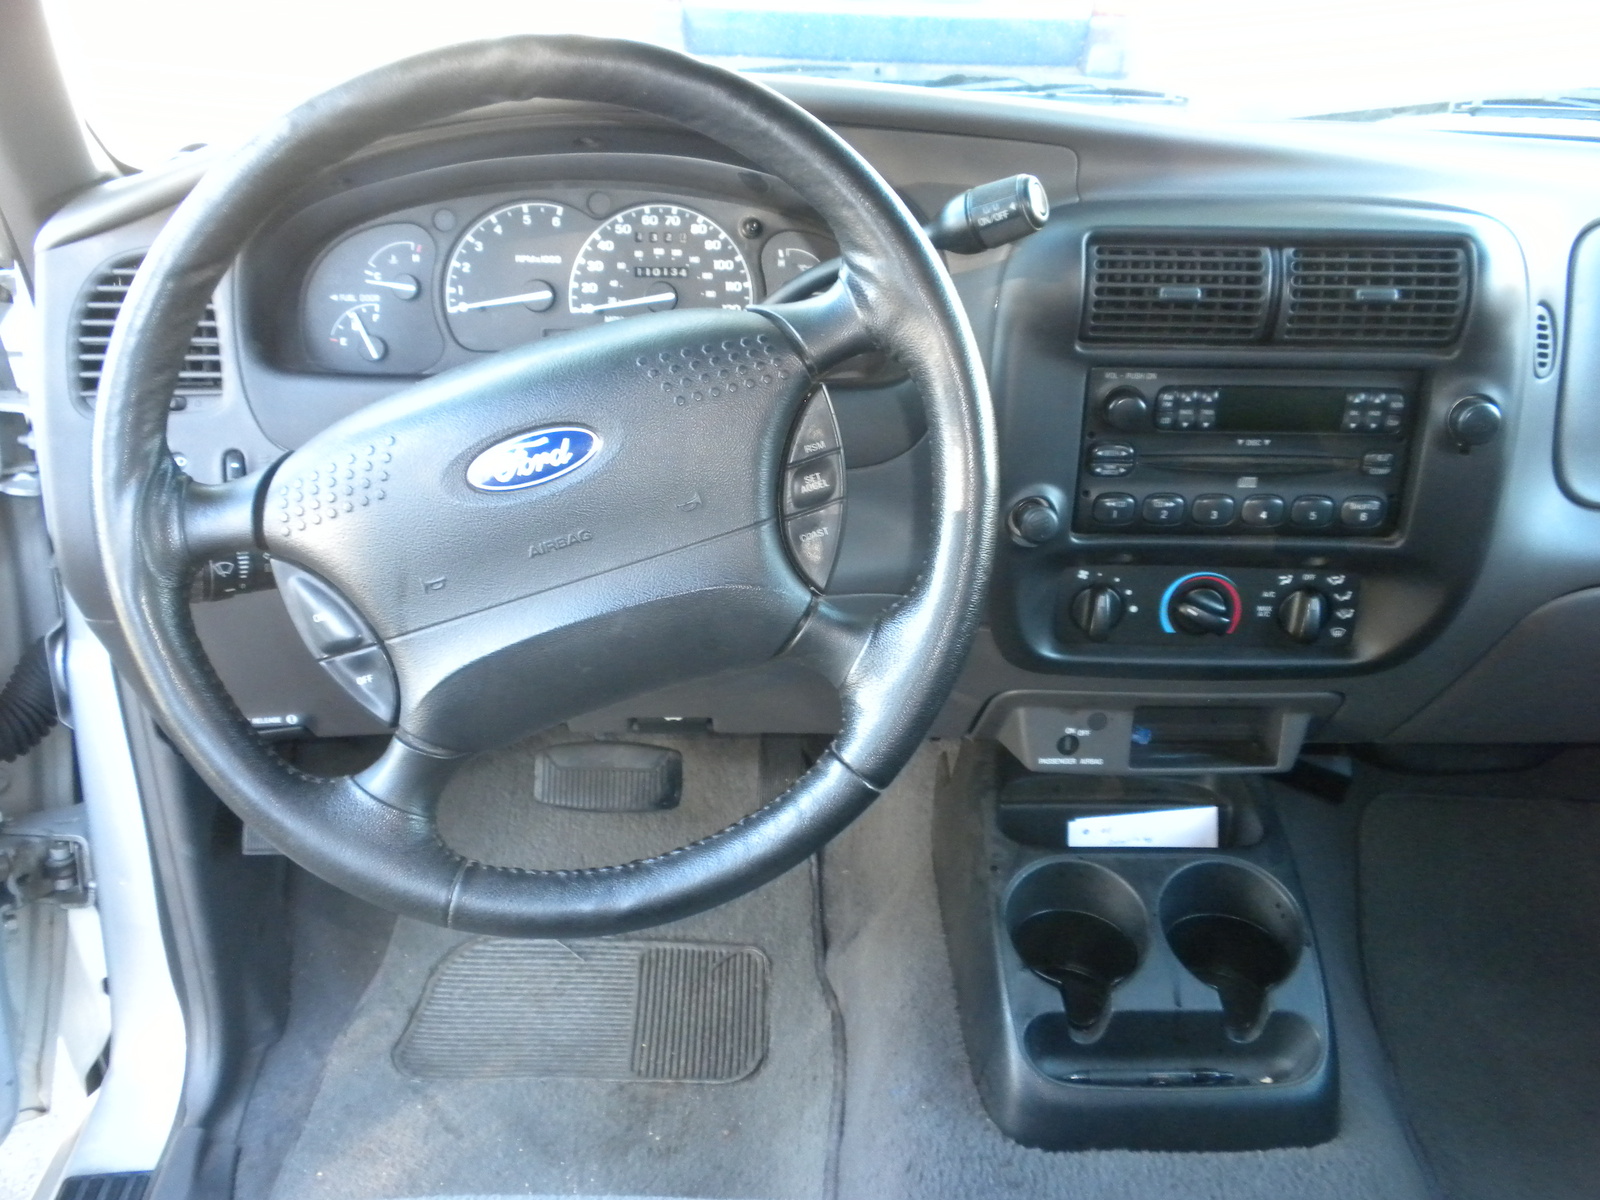 2001 Ford ranger interior #2